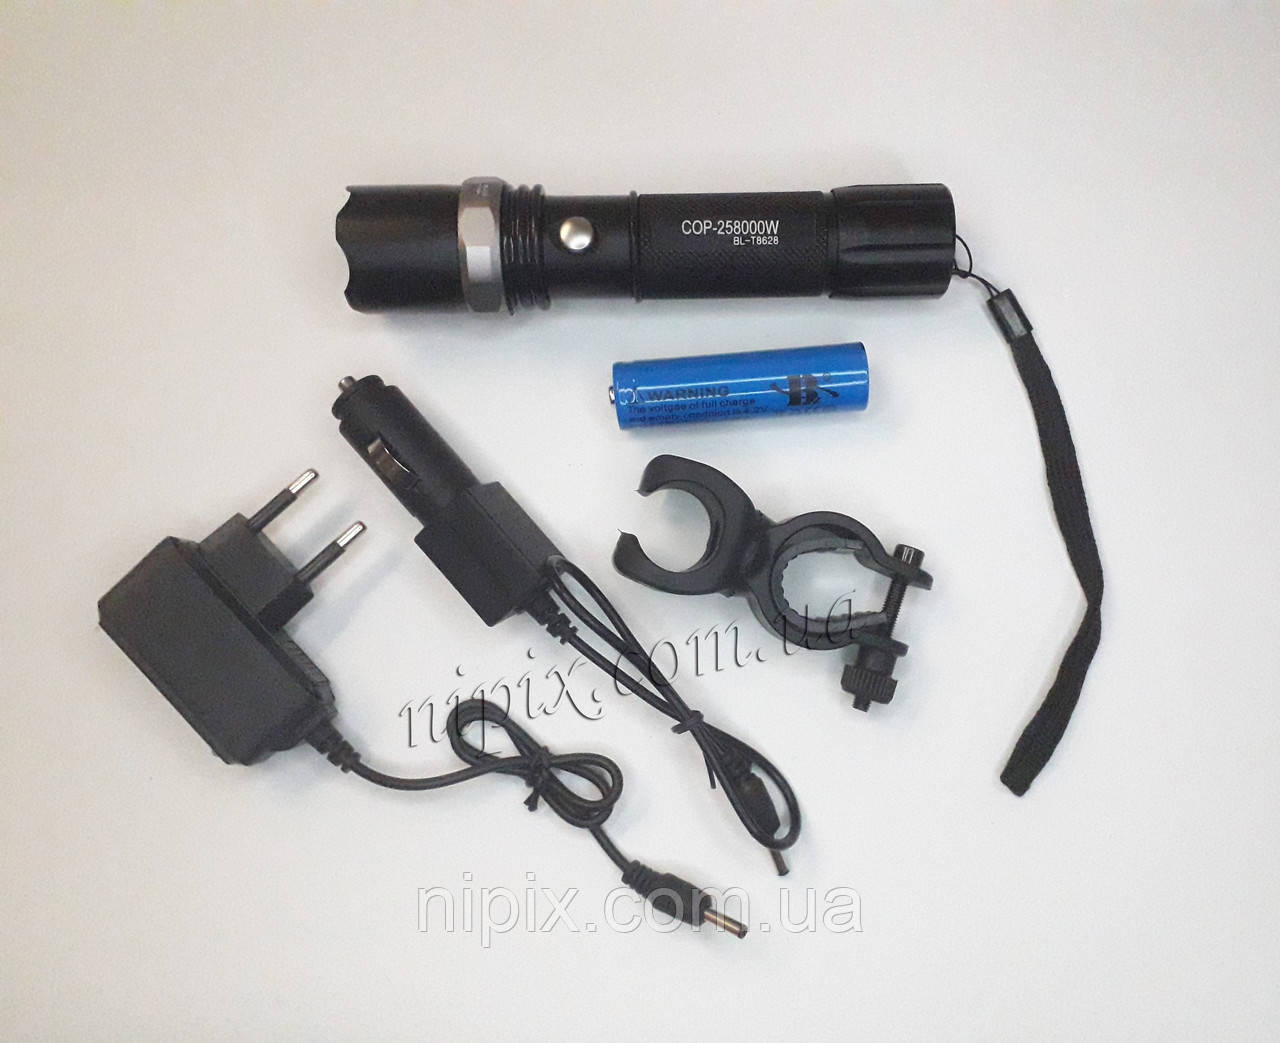 Ліхтарик акумуляторний тактичний з кріпленням на велосипед BL-T8628